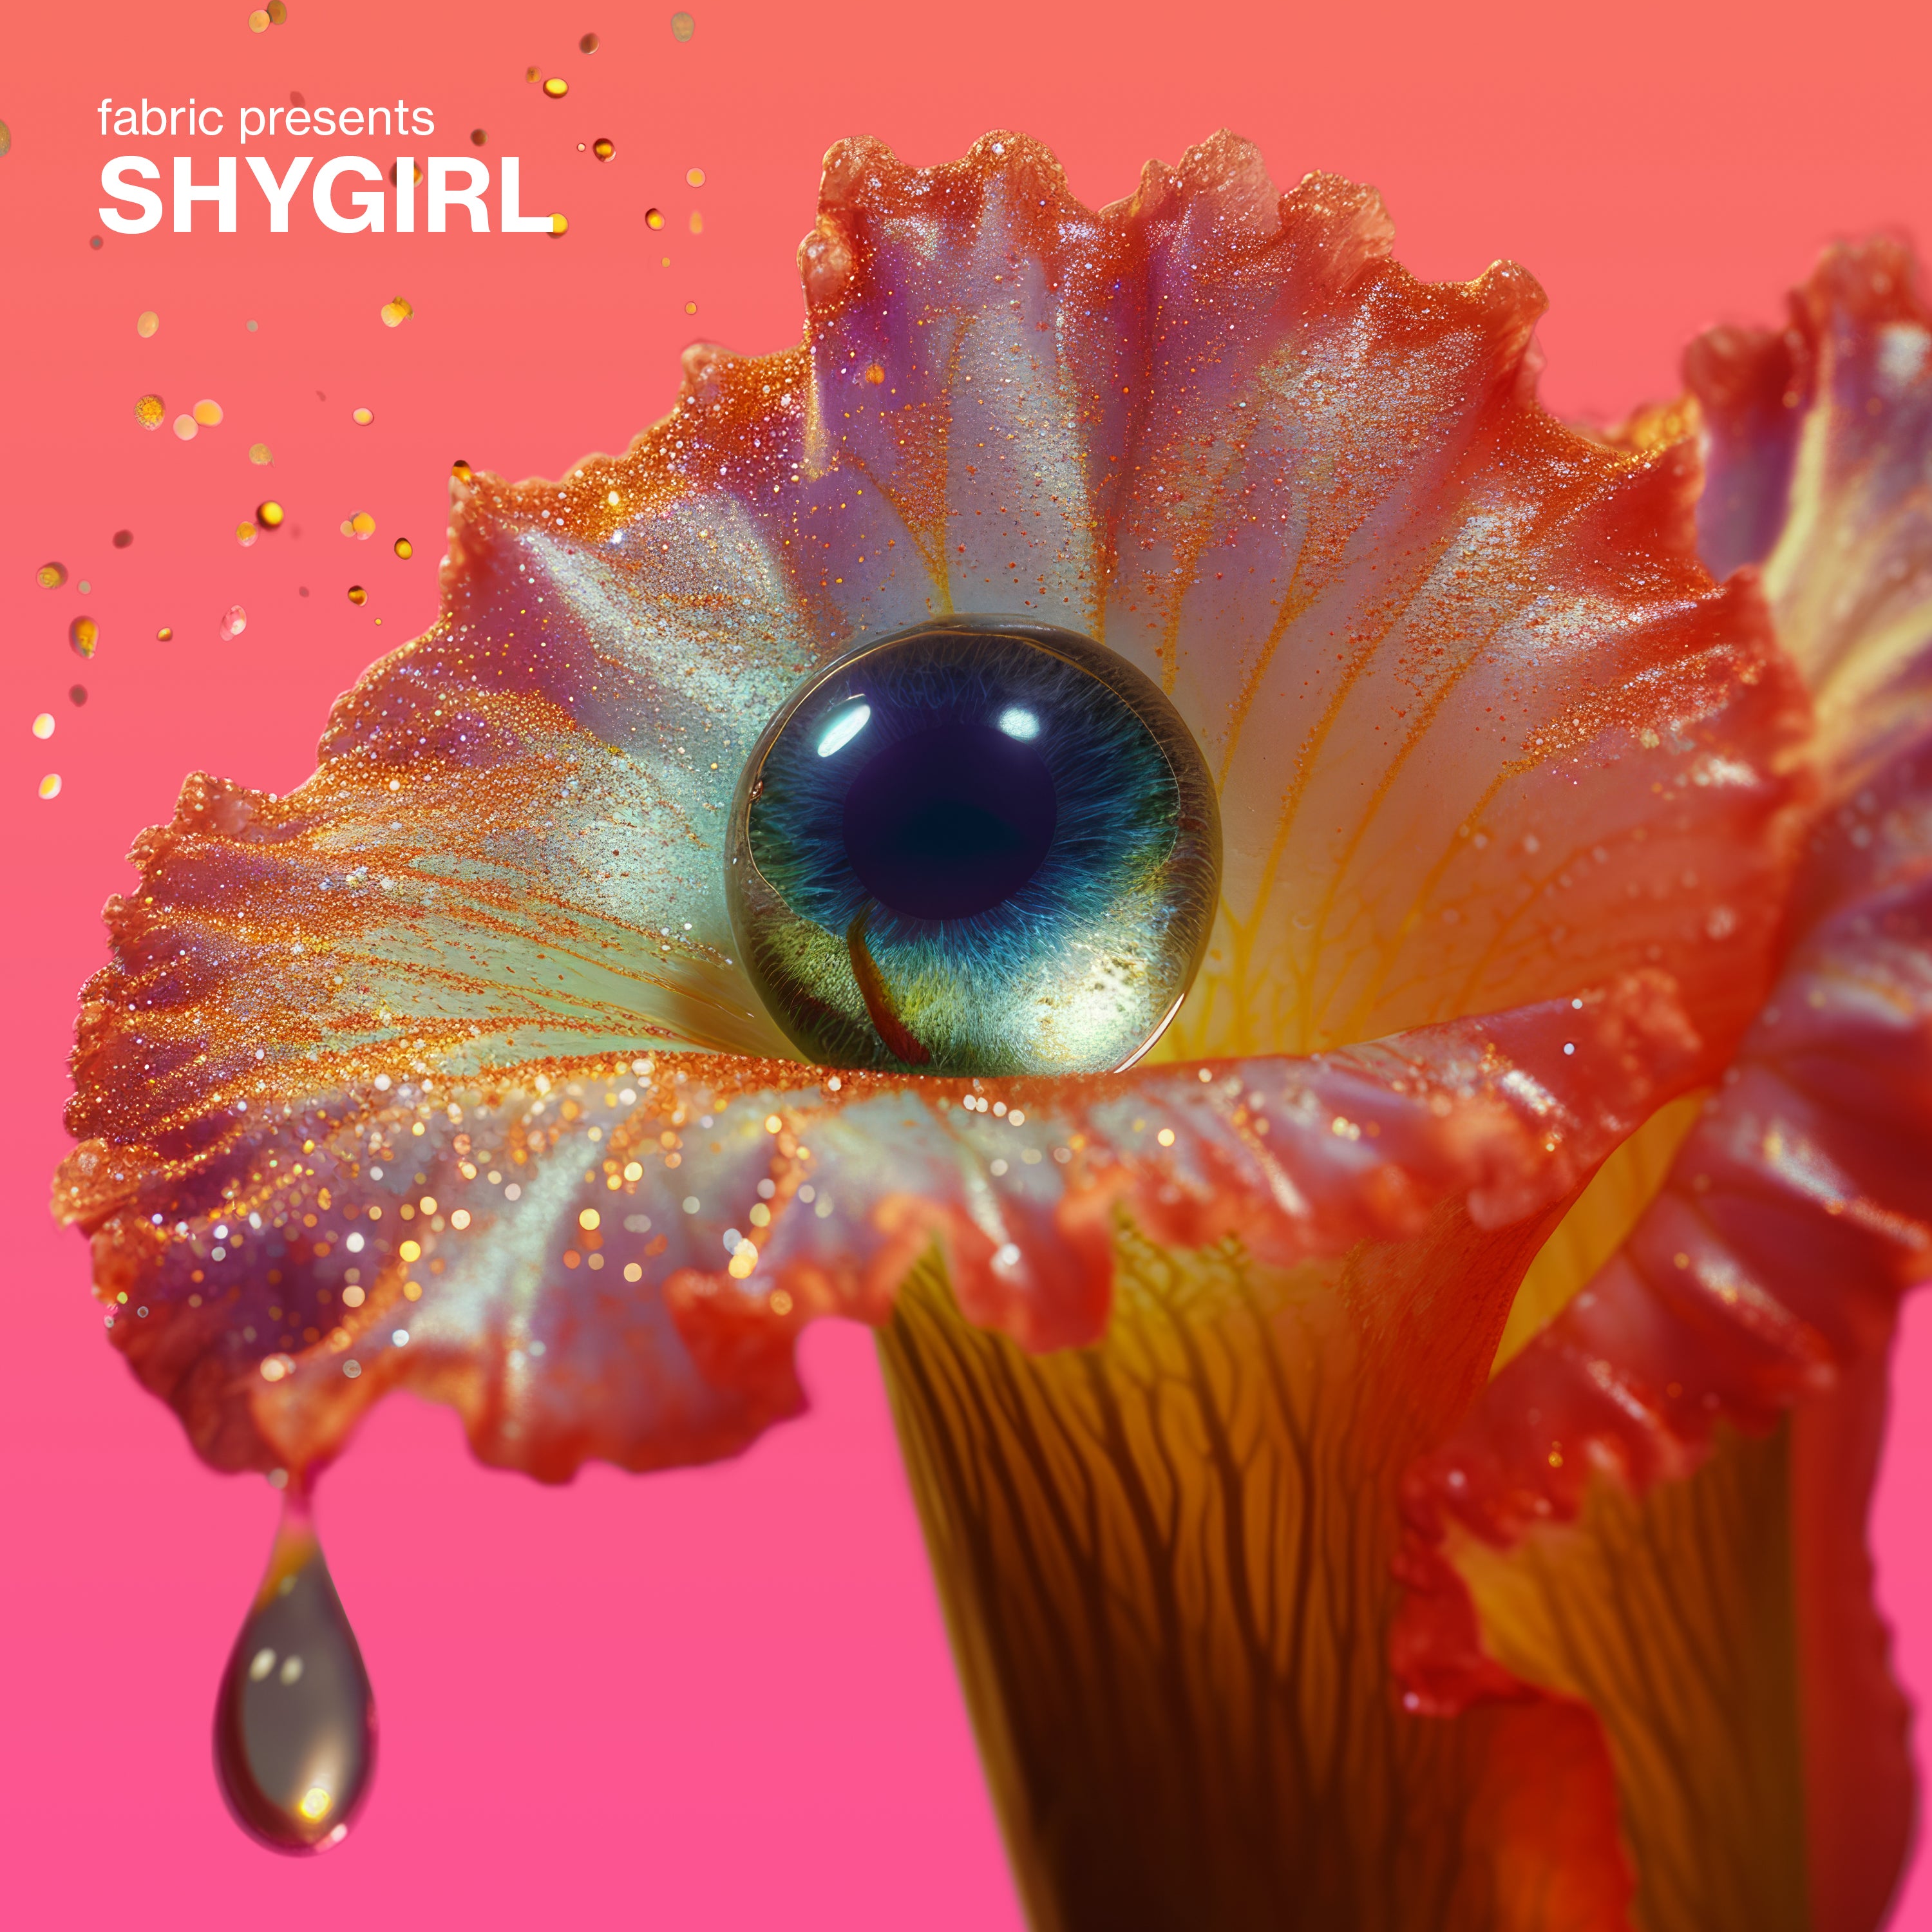 Shygirl - fabric presents Shygirl: CD